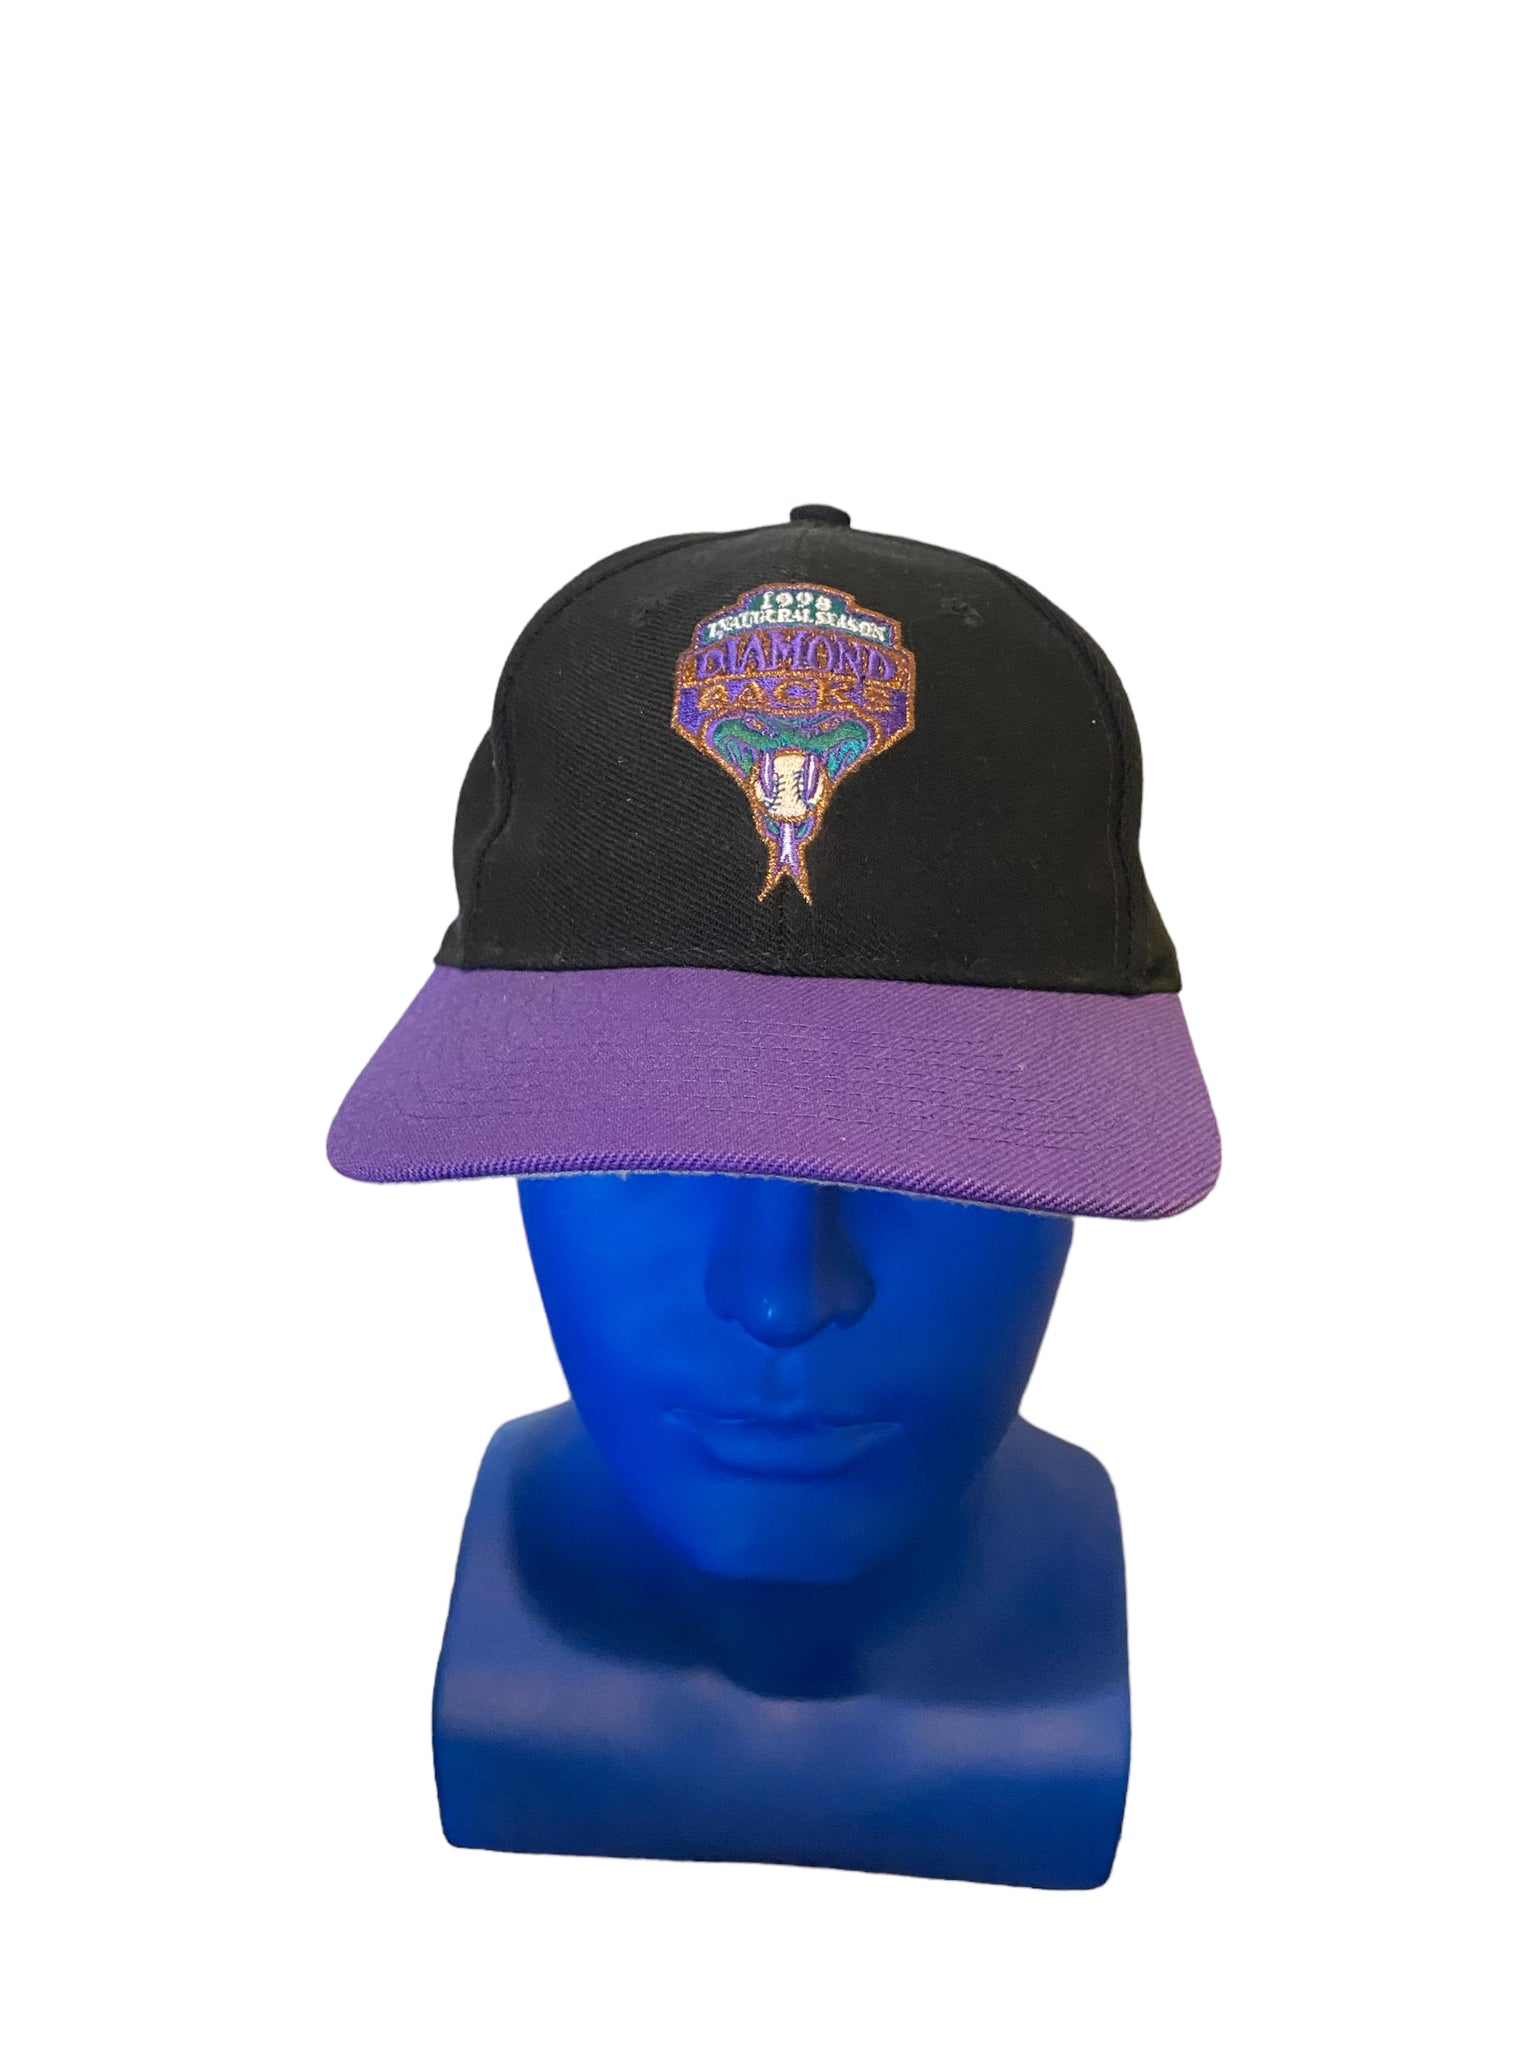 Vintage Arizona Diamondbacks 1998 Inaugural Season Adjustable Cap Black/Purple